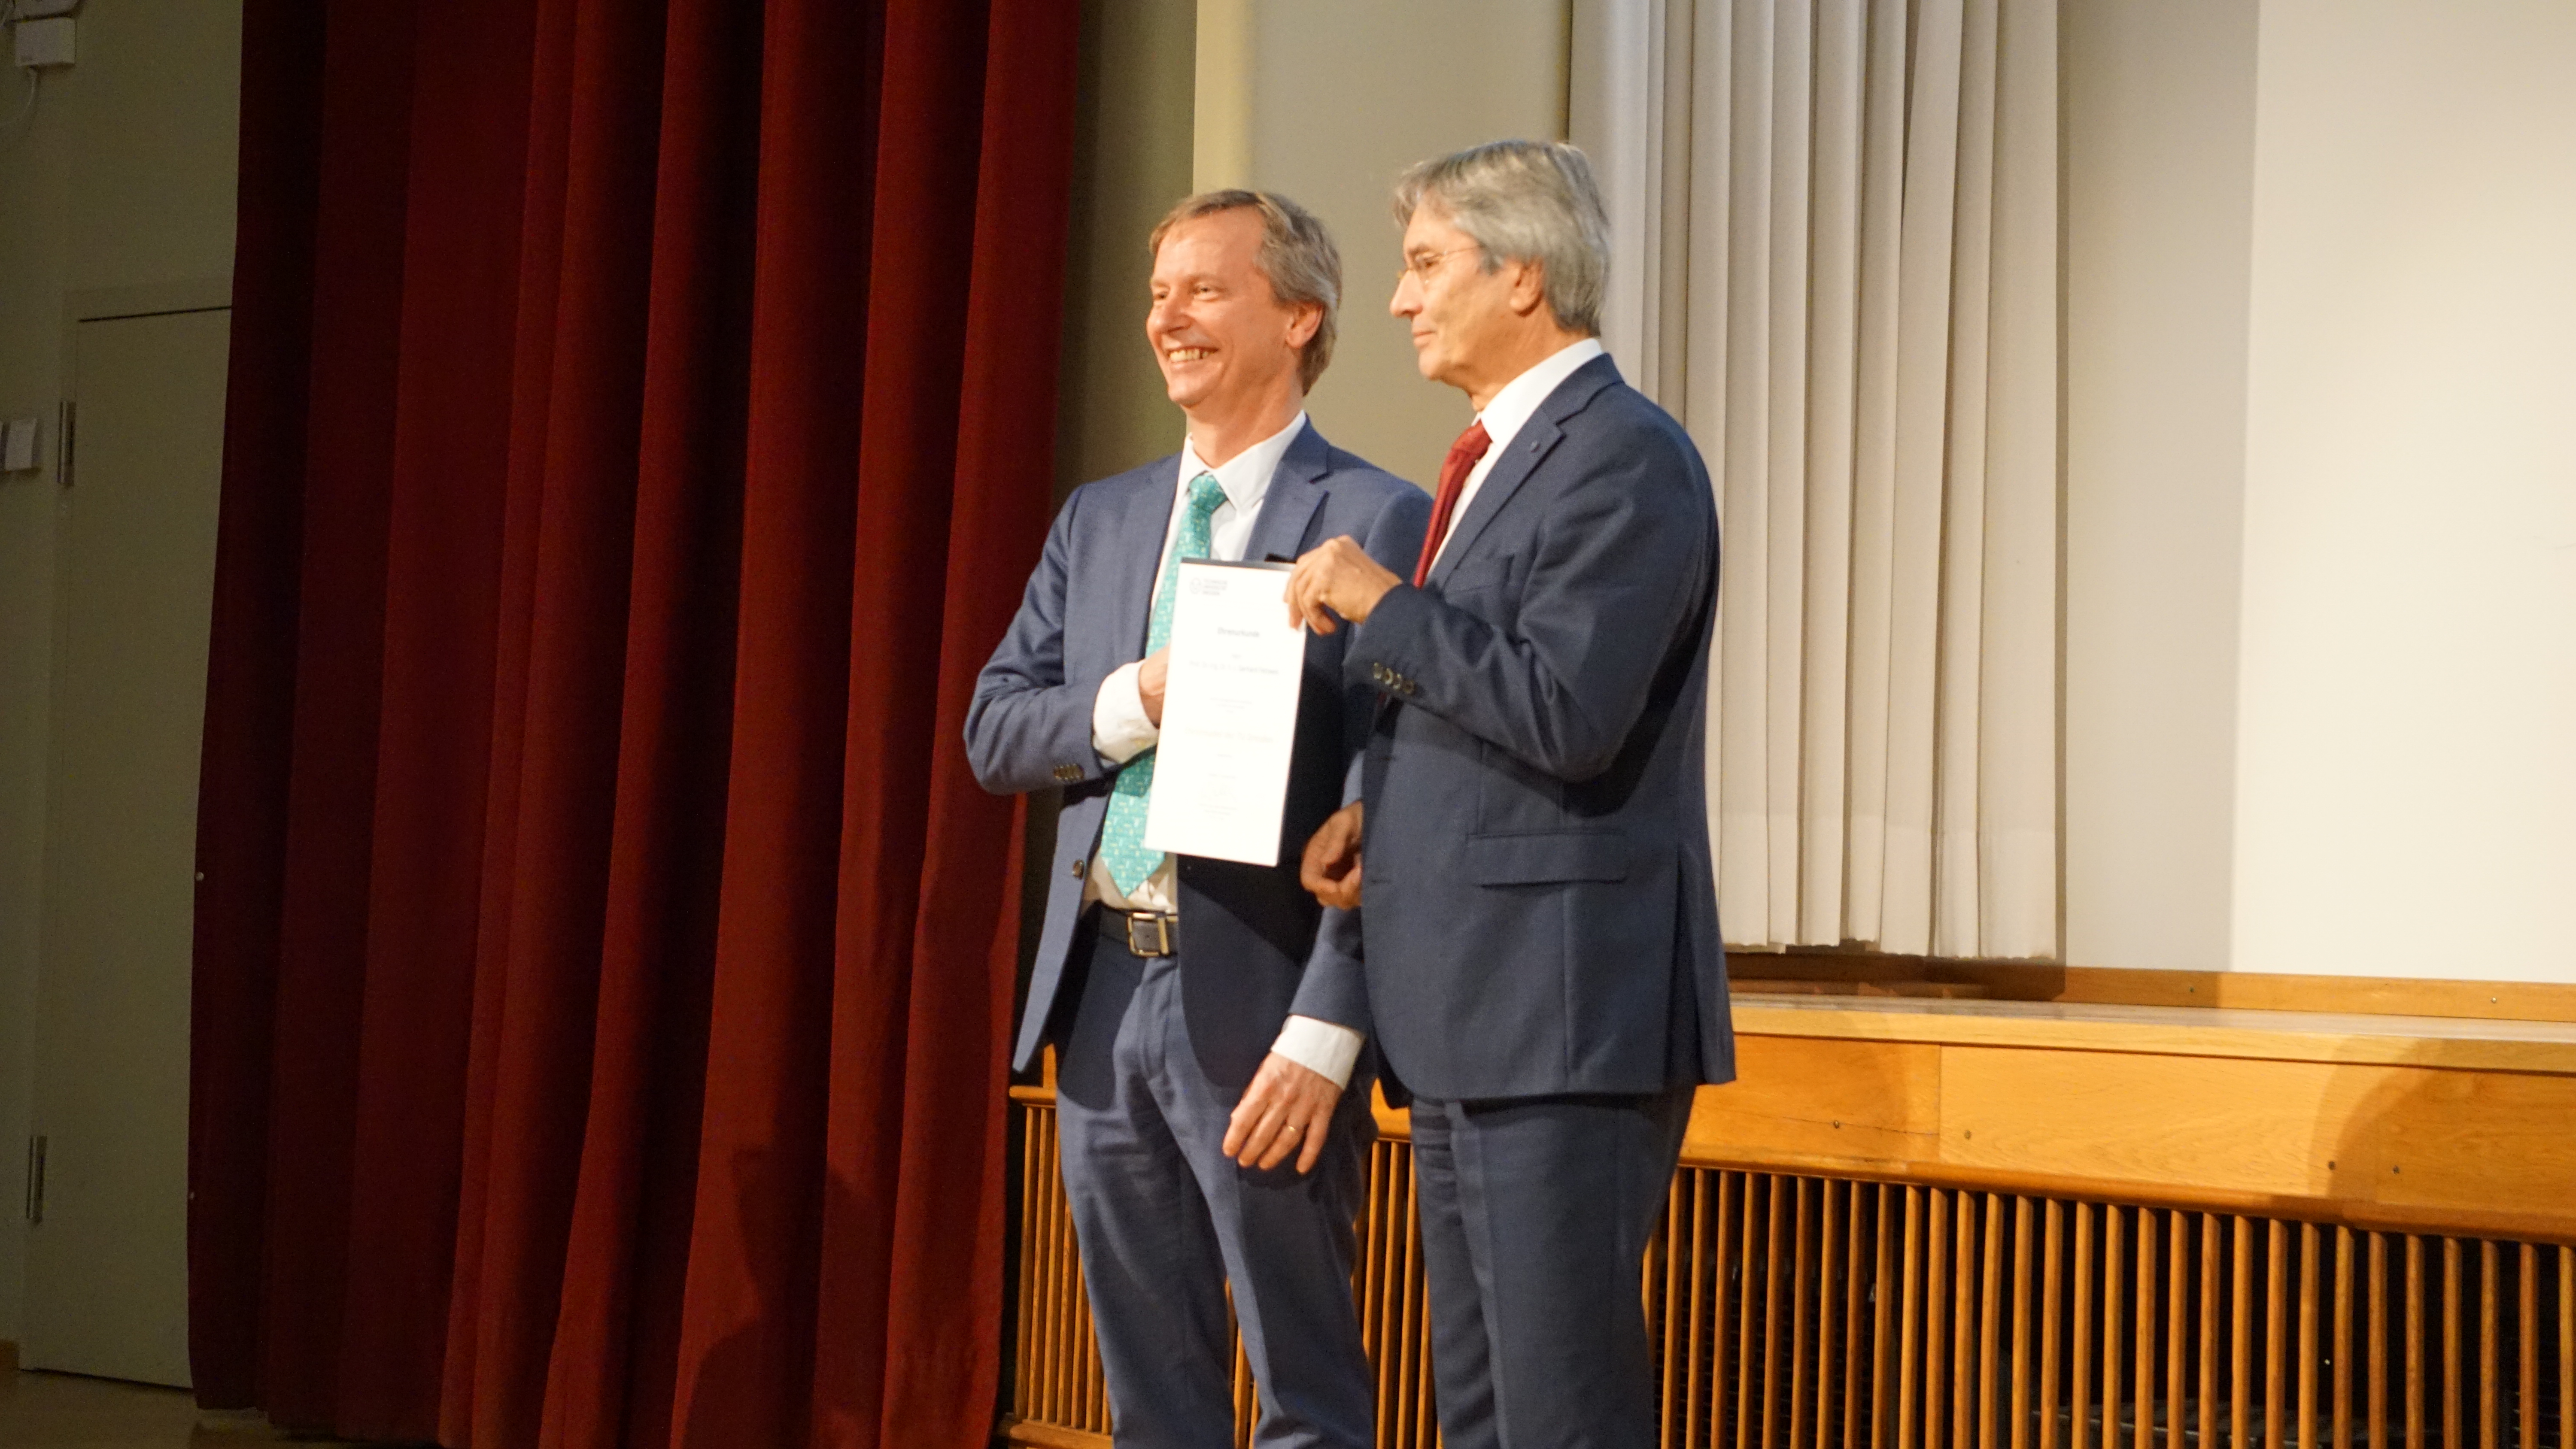 handover golden needle of TU to prof. gerhard Fettweis